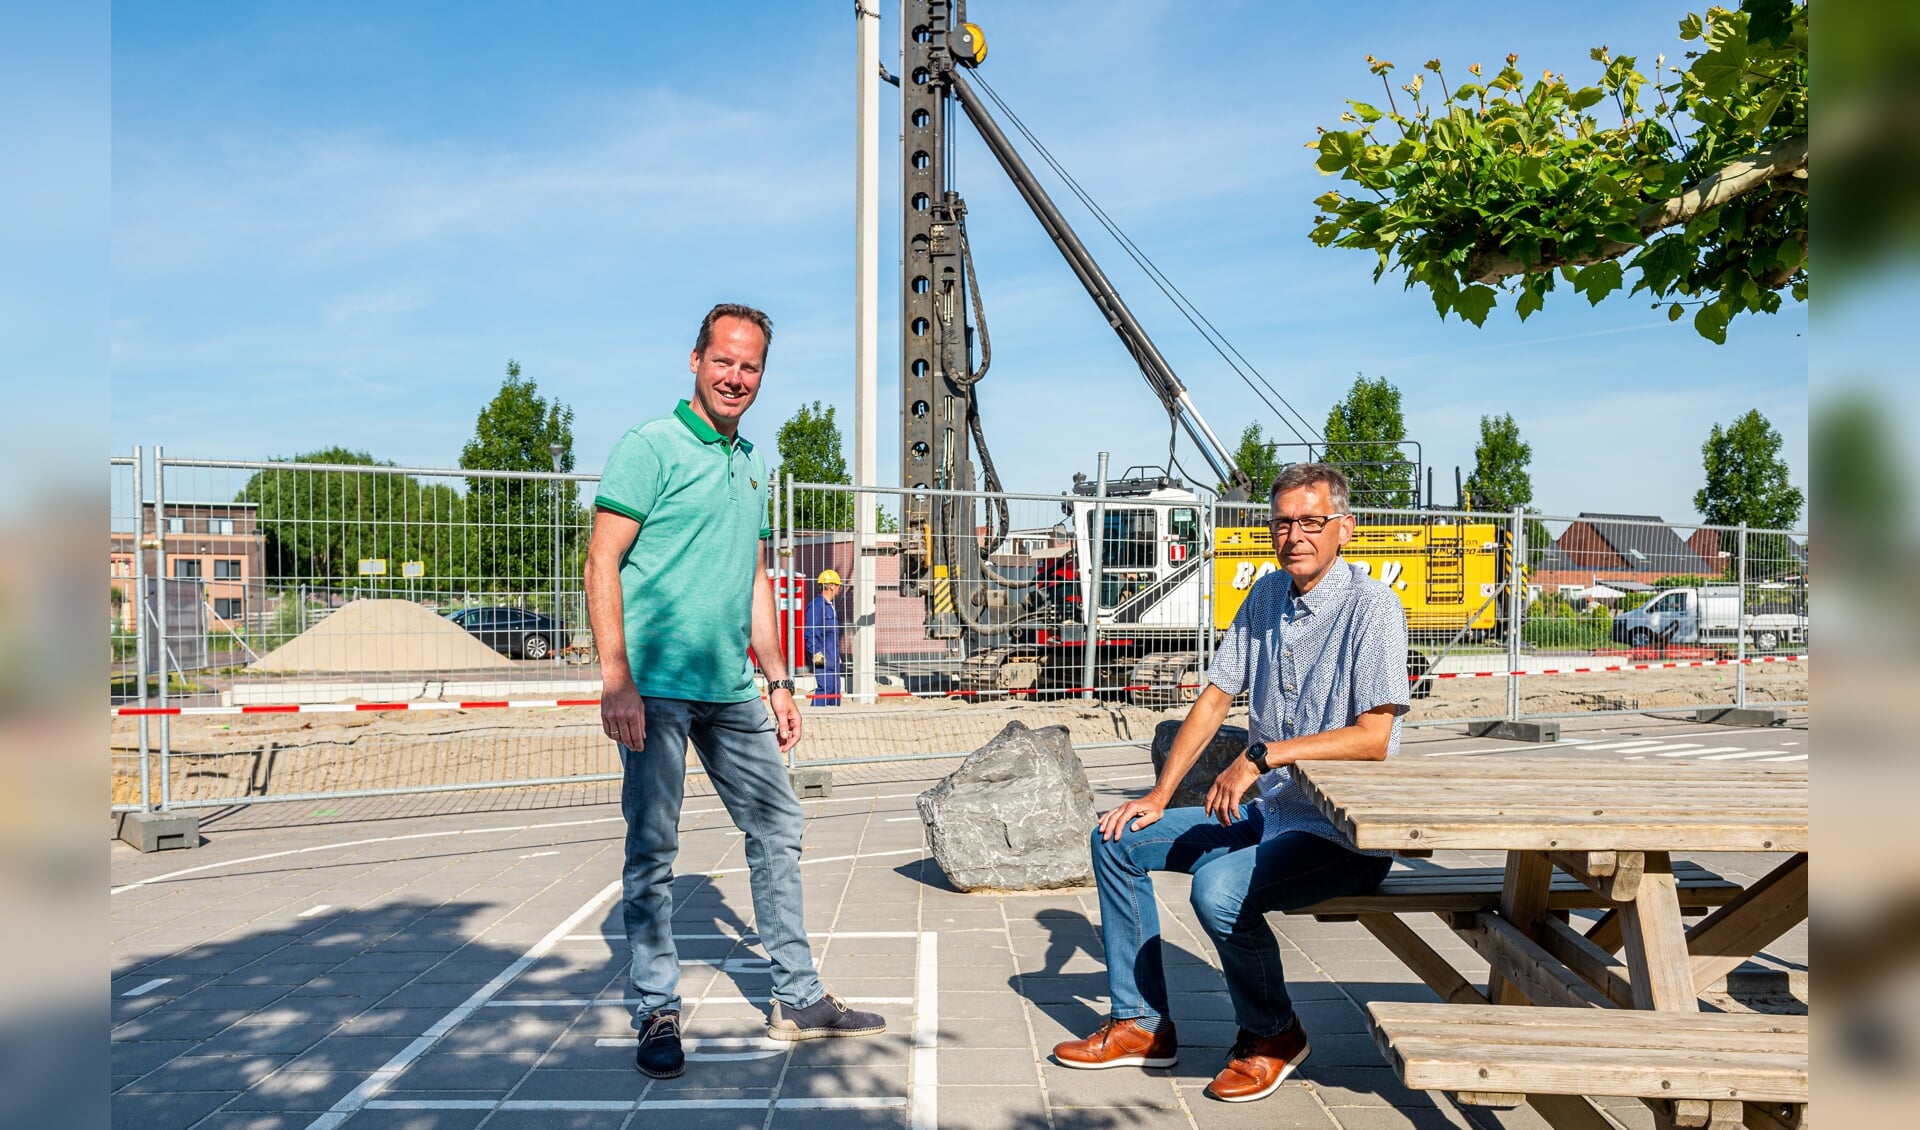 • Directeuren Jaco Vink van de Schoonhovense Ichtusschool (links) en André Romeijn van de Emmaschool voor de bouwplaats waar een compleet 'prefab' schoolgebouw wordt geplaatst.